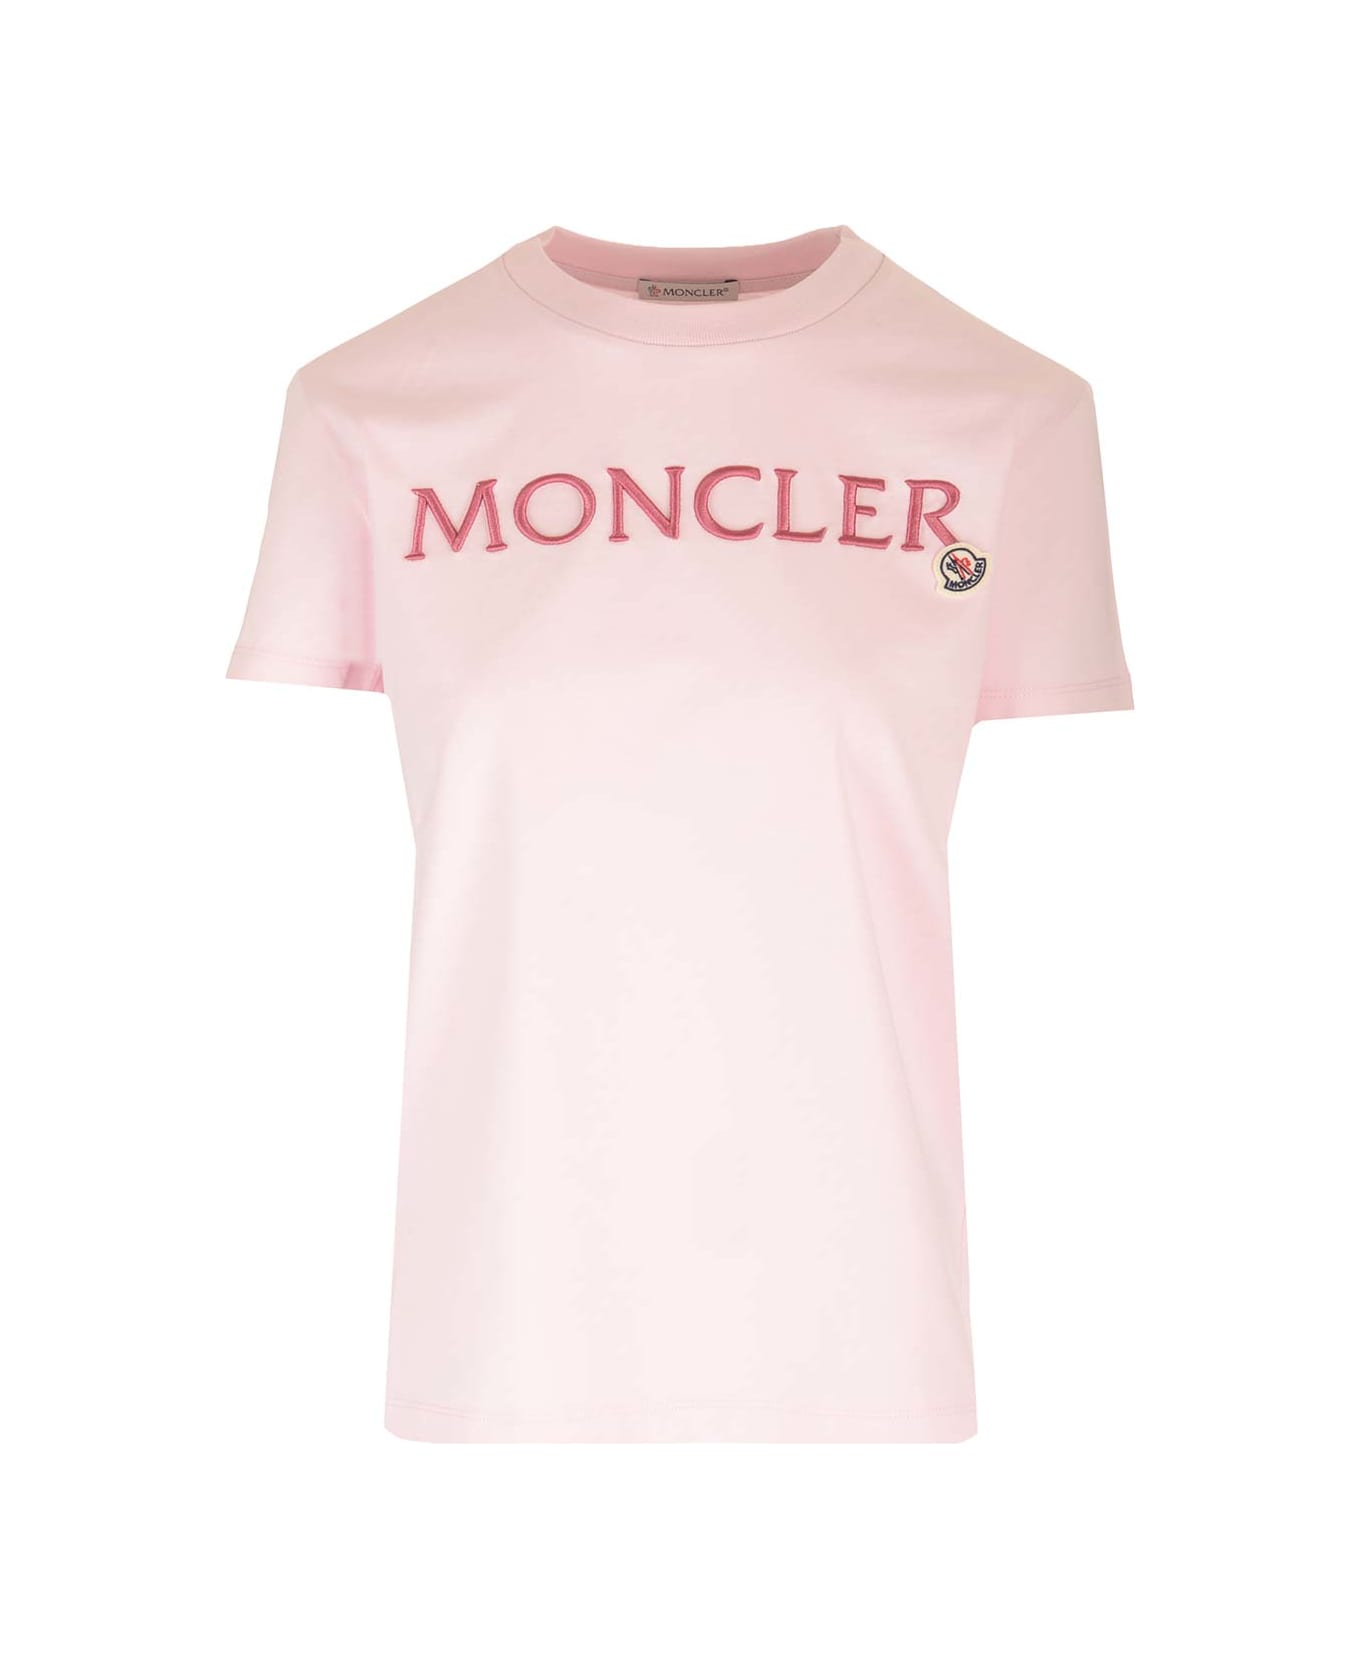 Moncler Signature T- Shirt